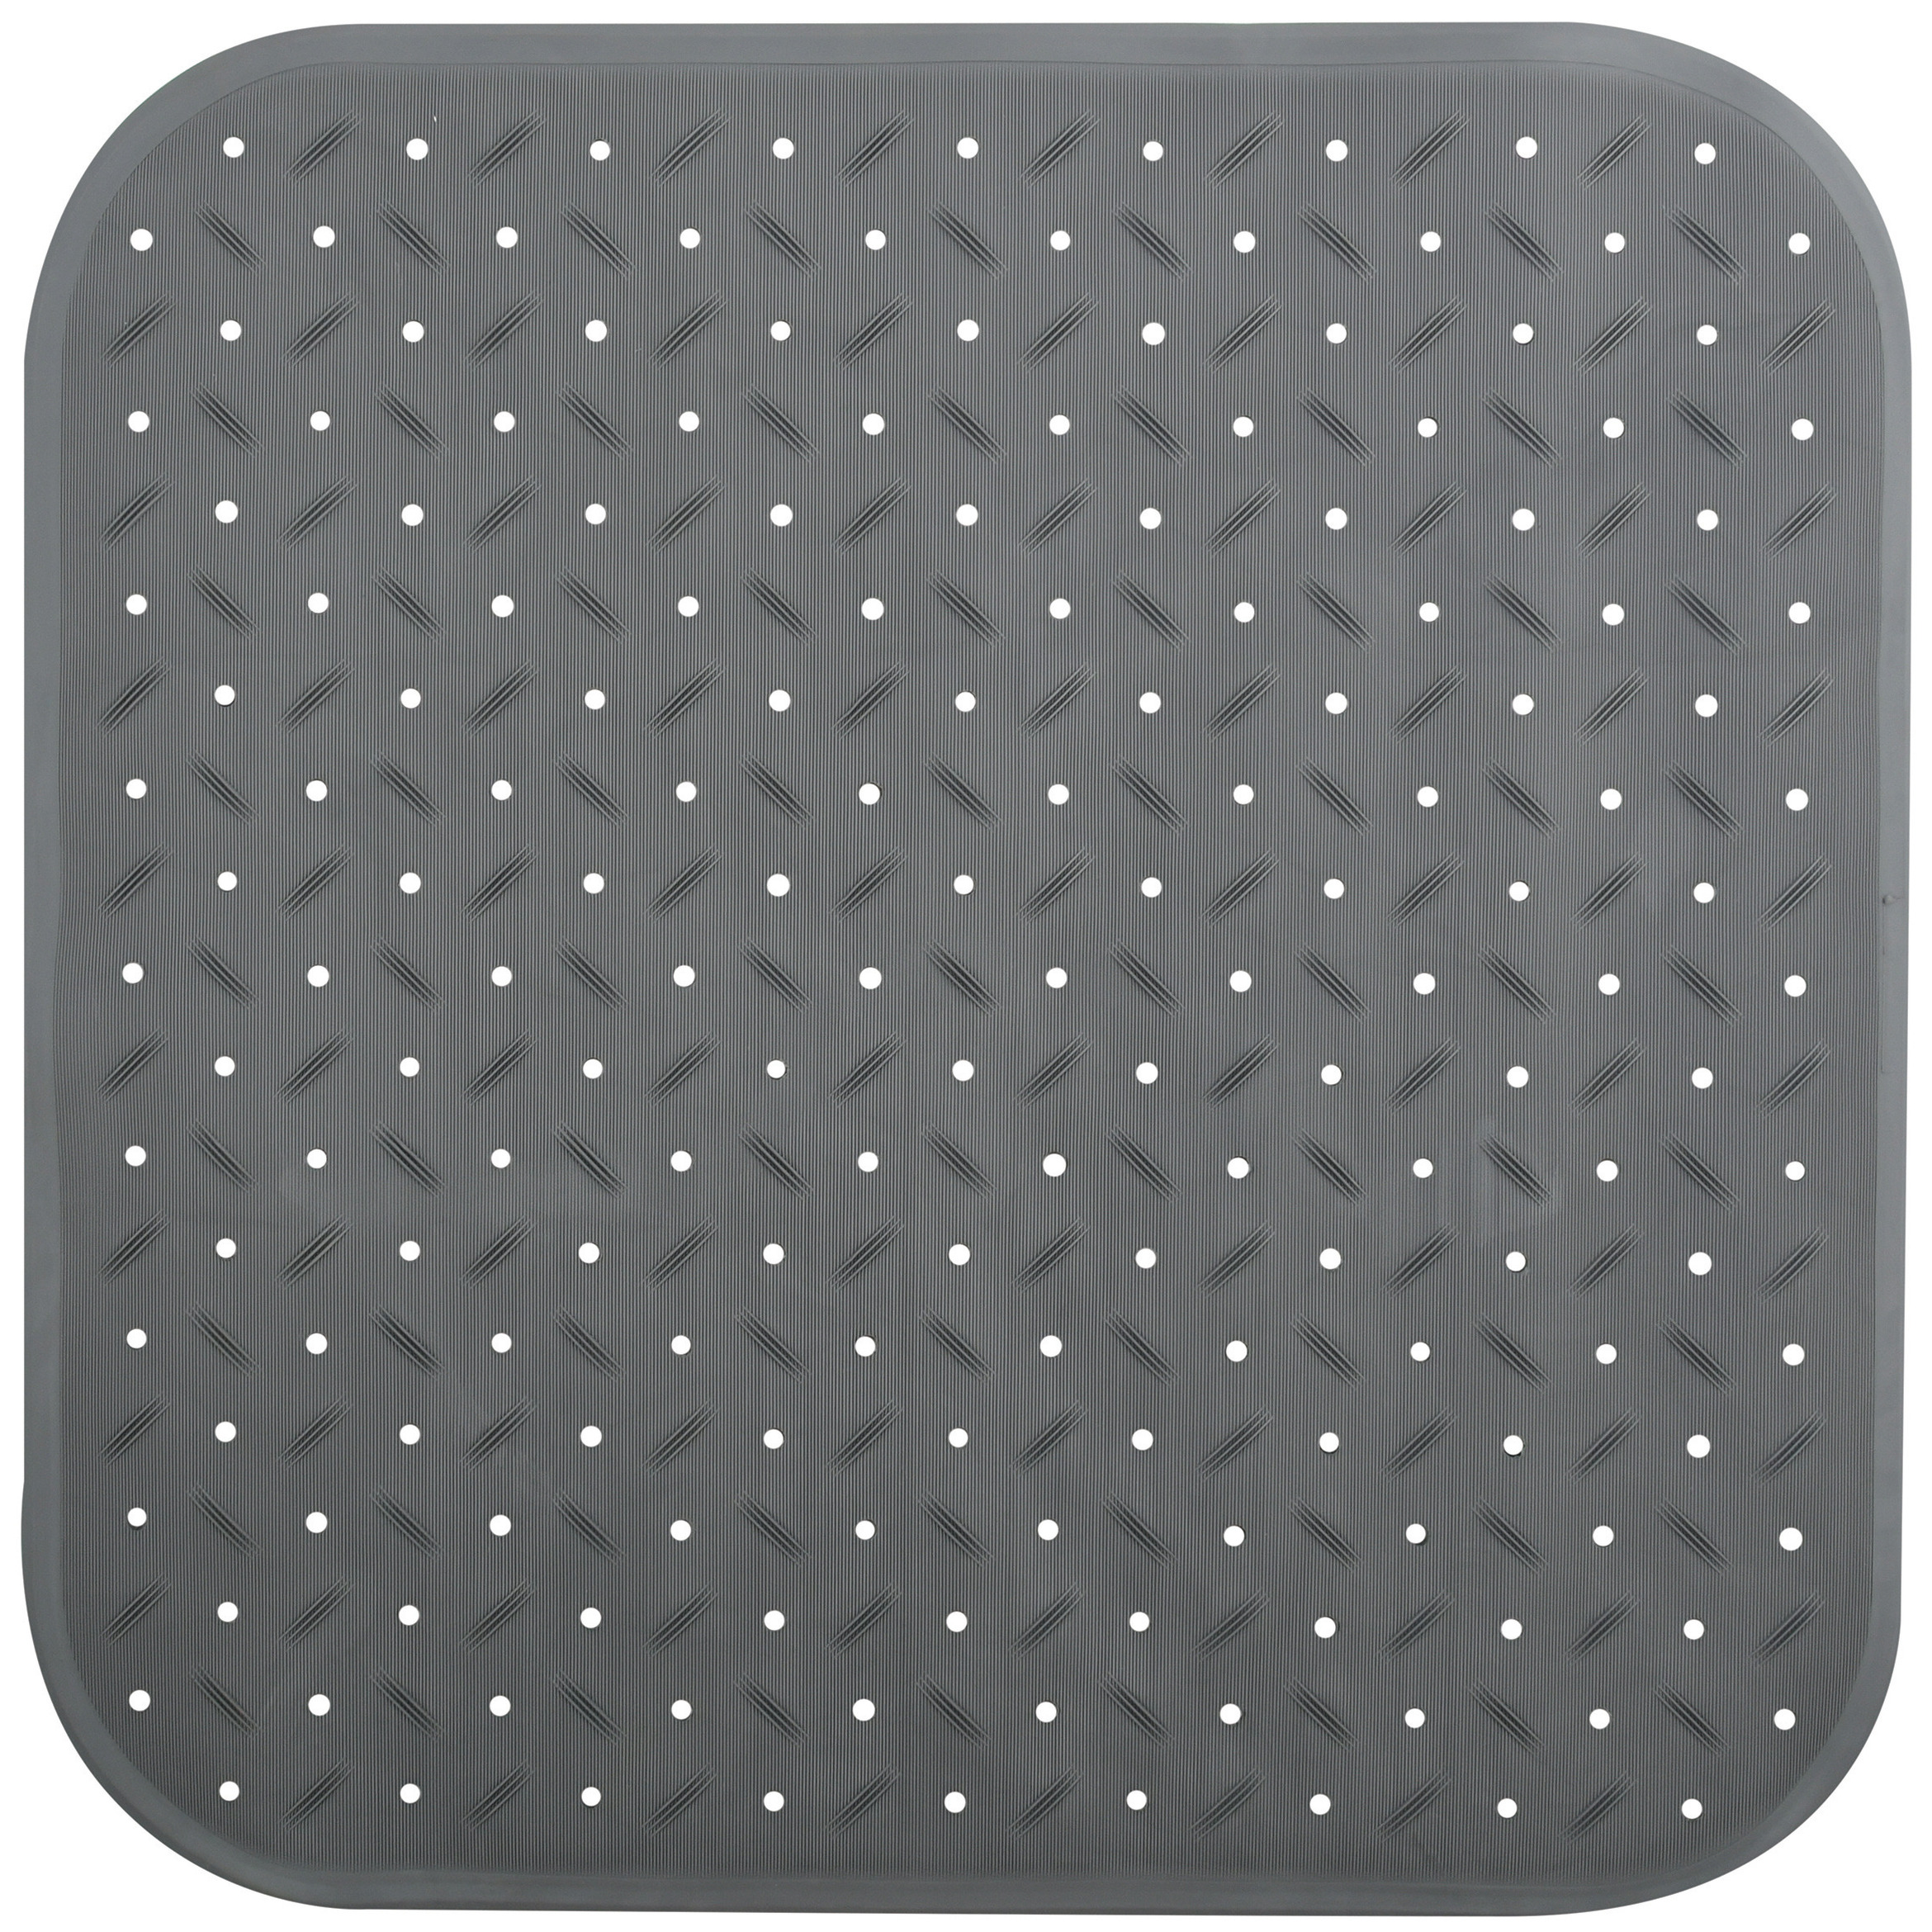 Douche-bad anti-slip mat badkamer rubber grijs 54 x 54 cm vierkant